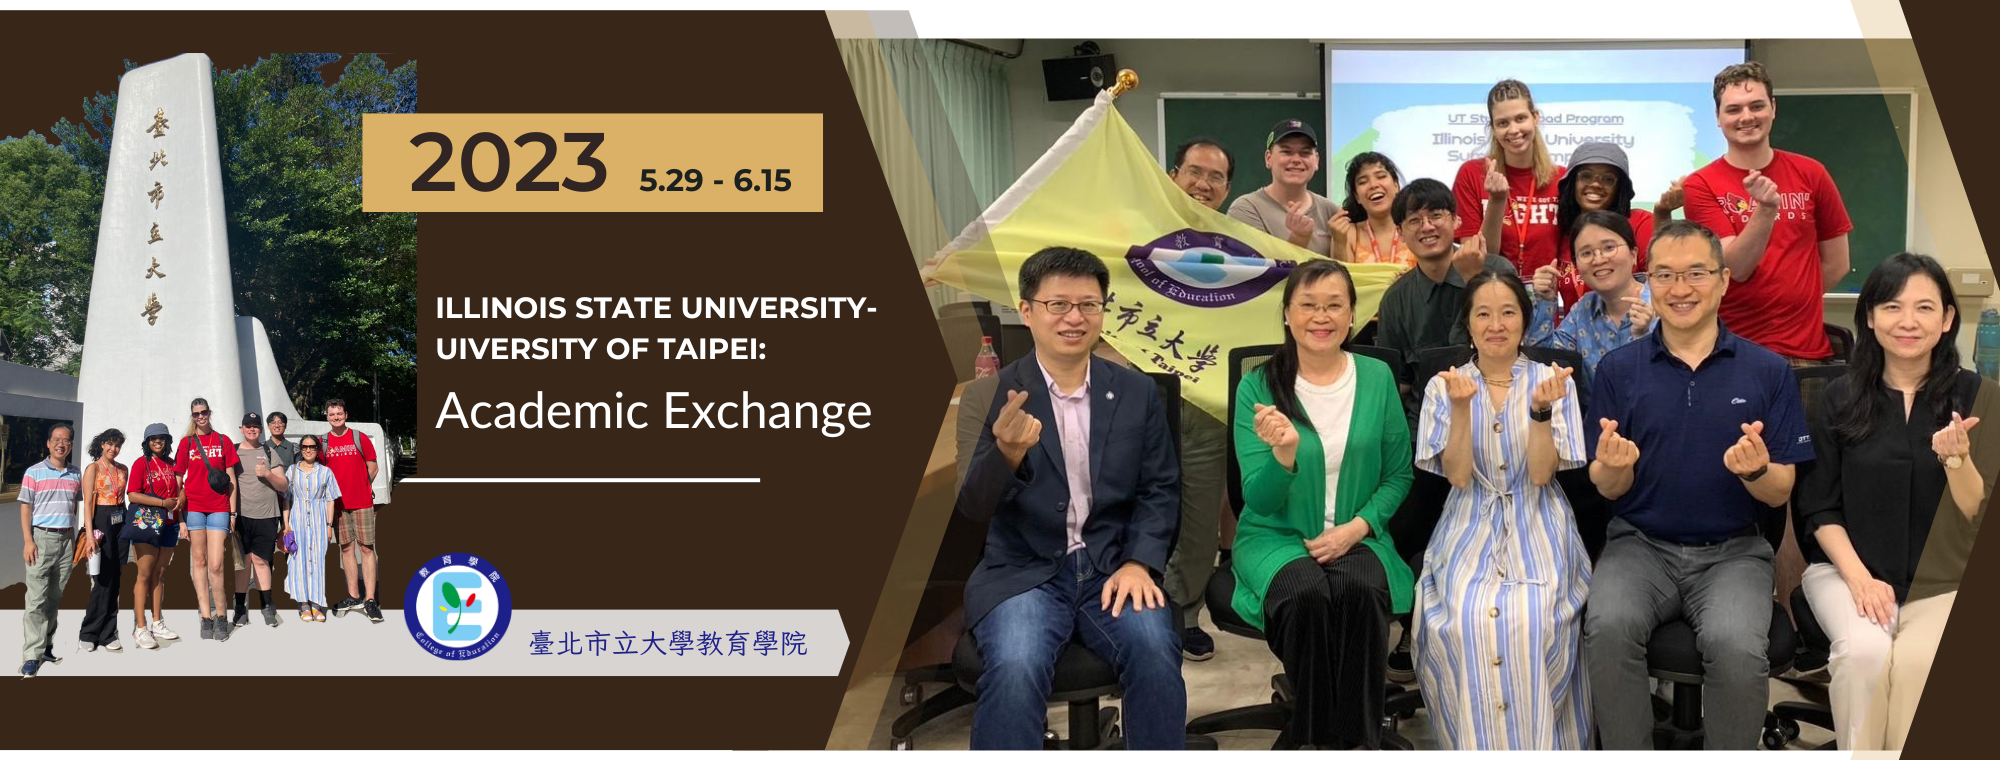 2023 Illinois State University - Taiwan Study Abroad